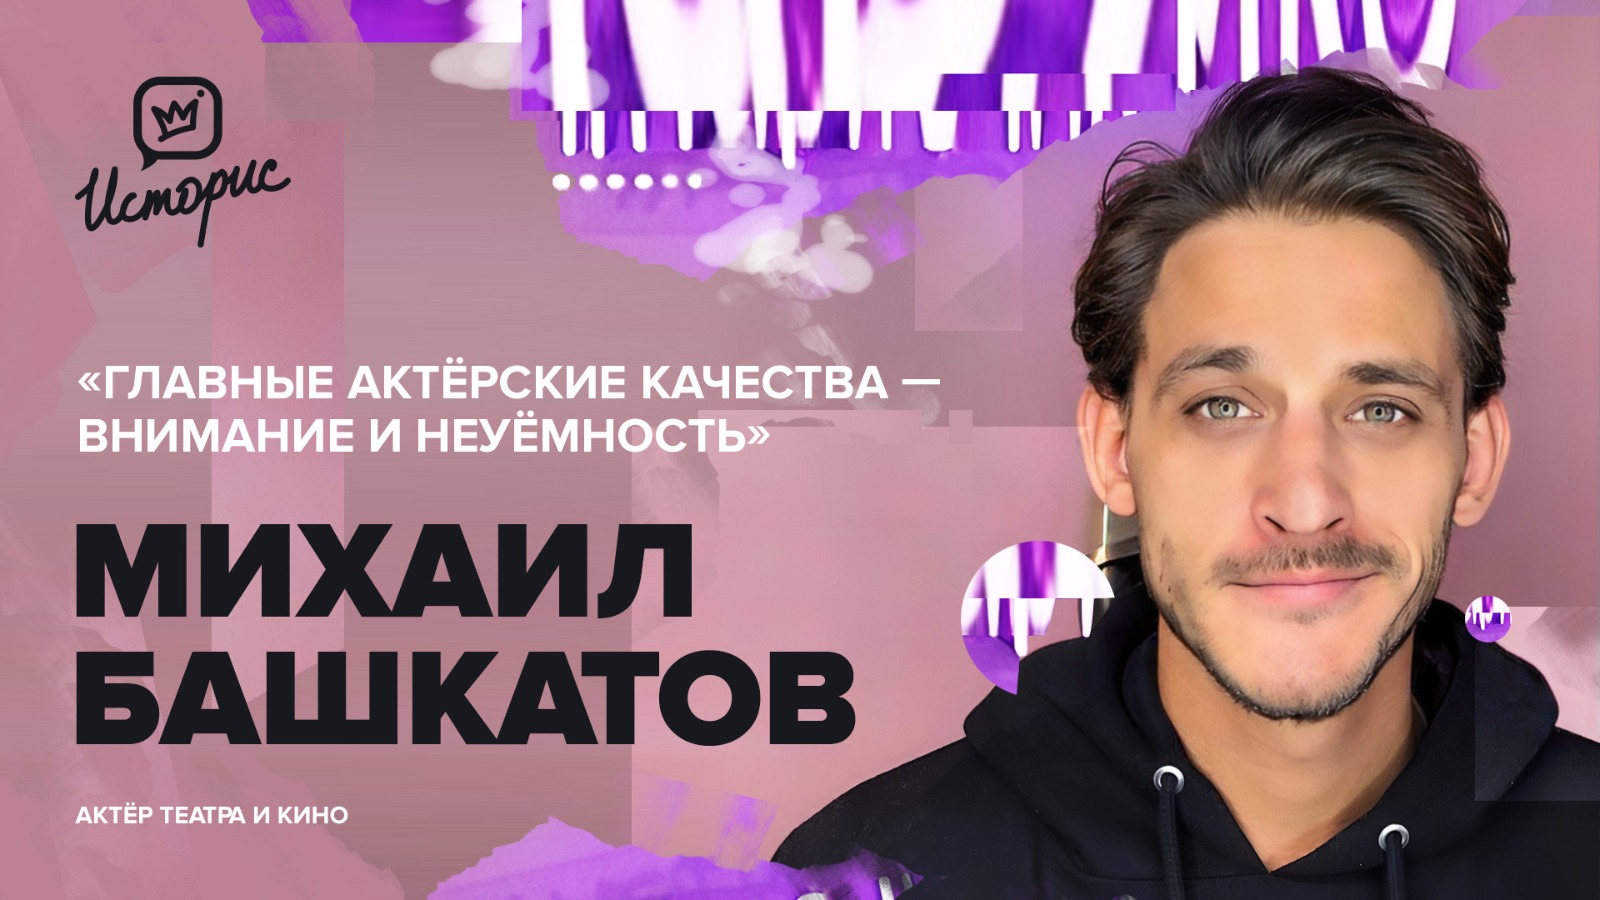 Михаил Башкатов — об актёрской профессии, дуэте с Бурковским, семье, любви к музыке и новых проектах